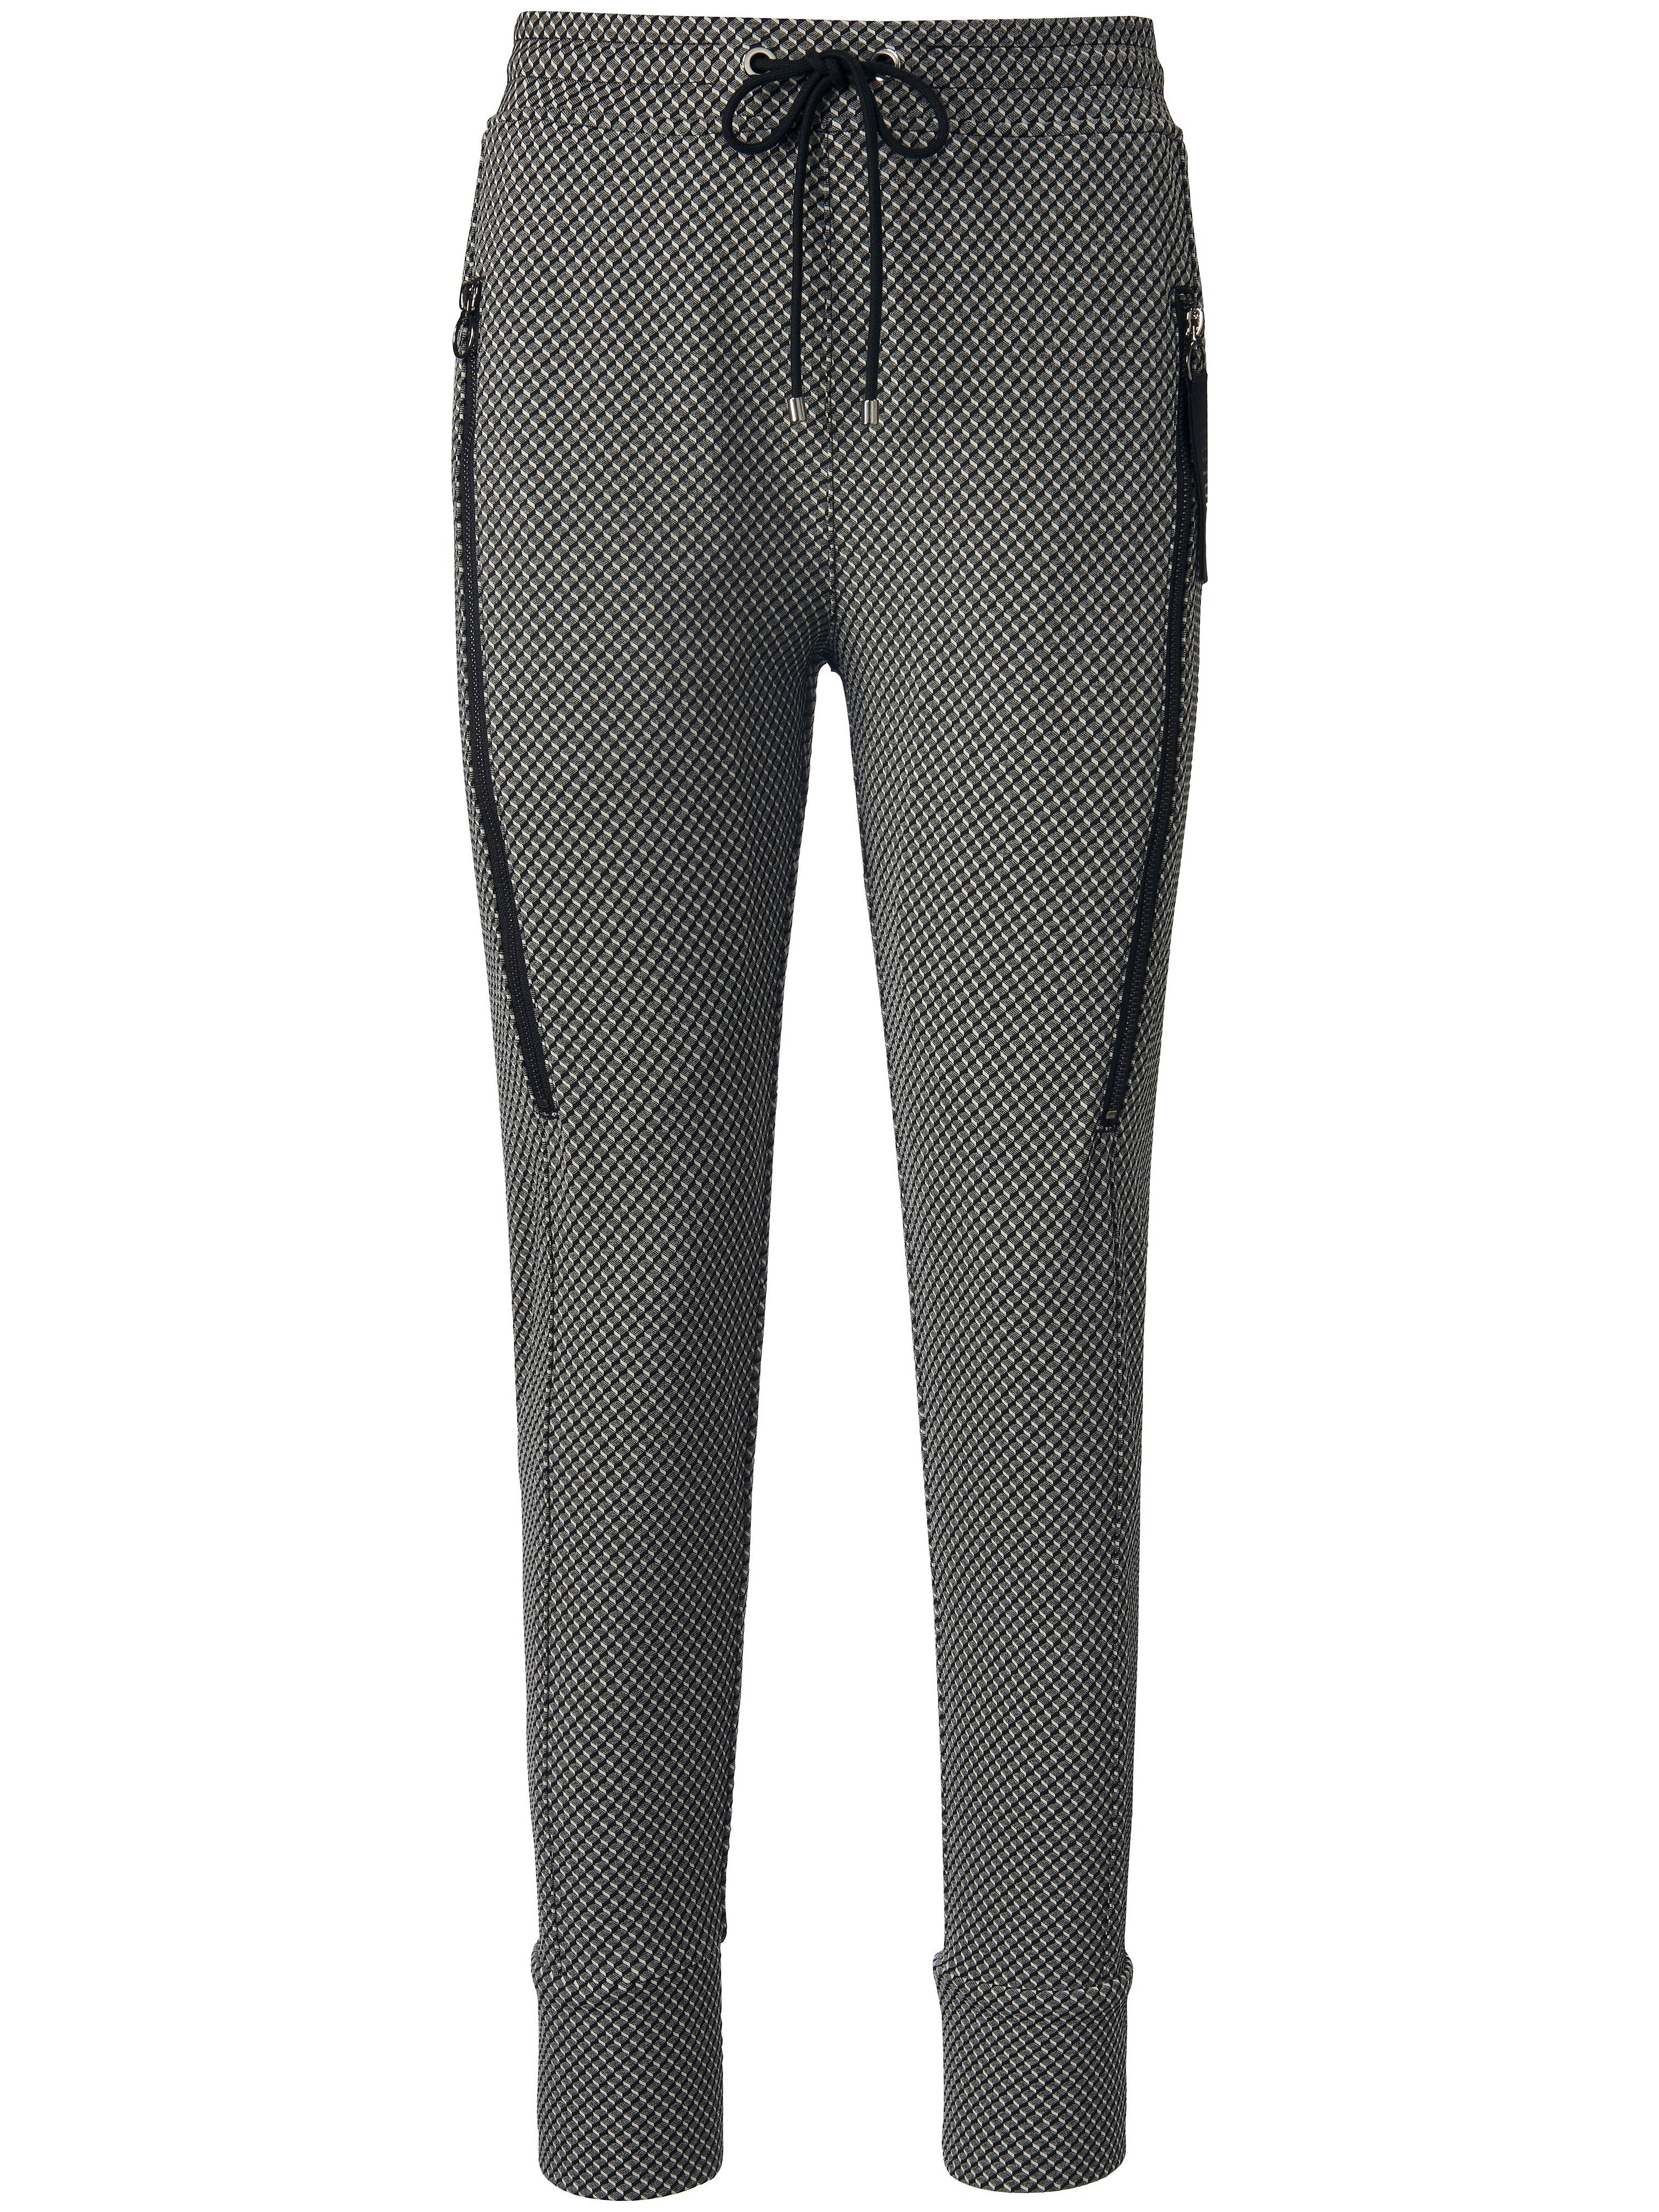 Le pantalon taille élastiquée modèle Future  Mac gris